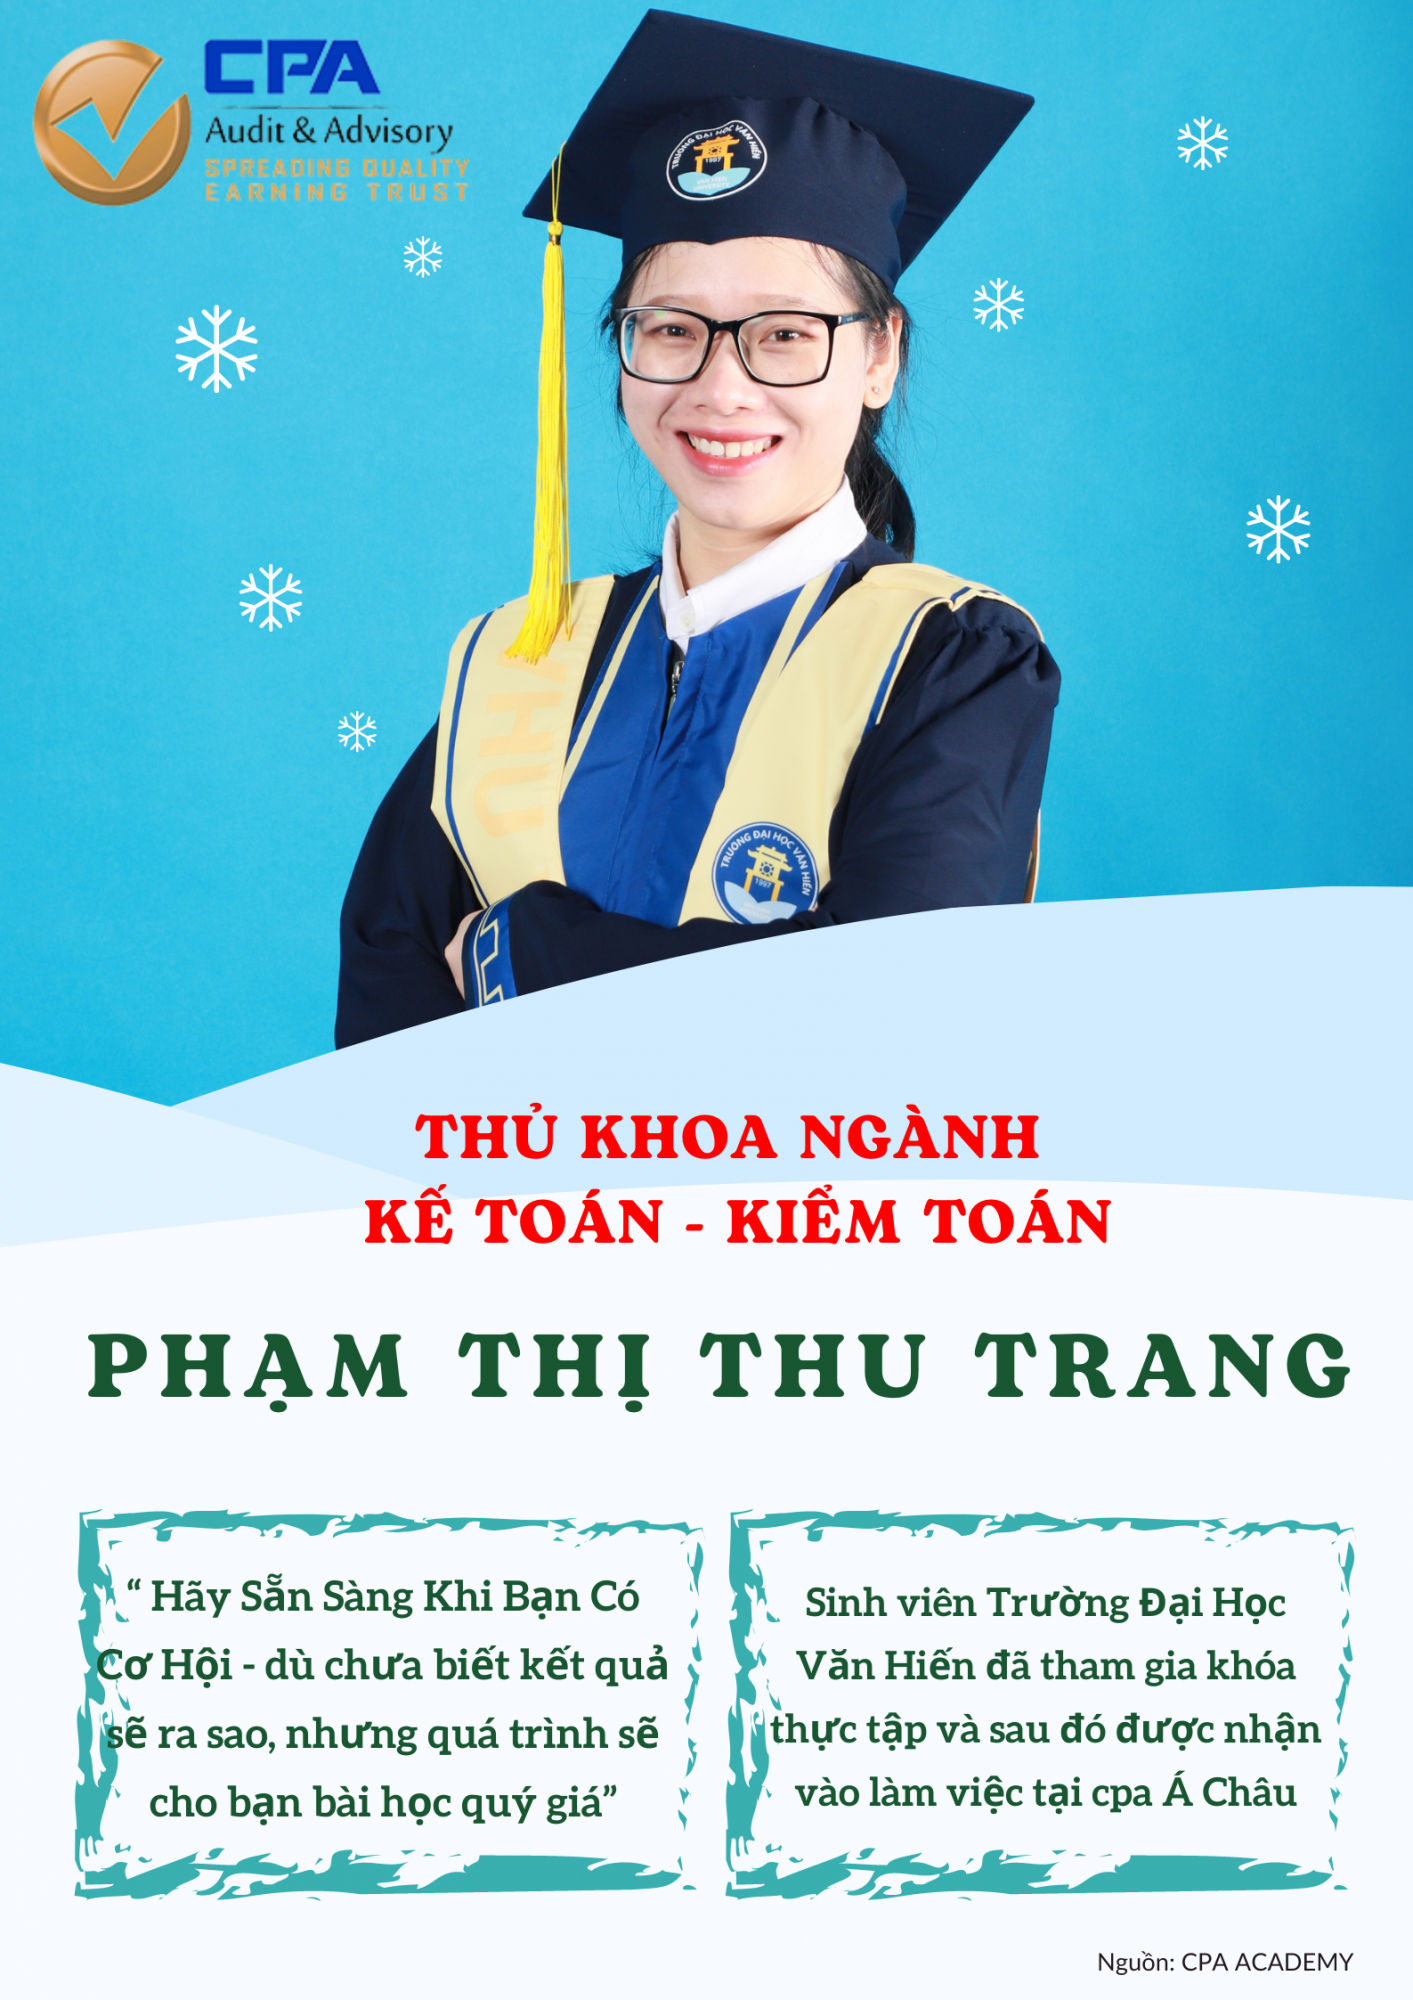 Phạm Thị Thu Trang – Thủ khoa ngành kế toán kiểm toán đang làm việc tại CPA